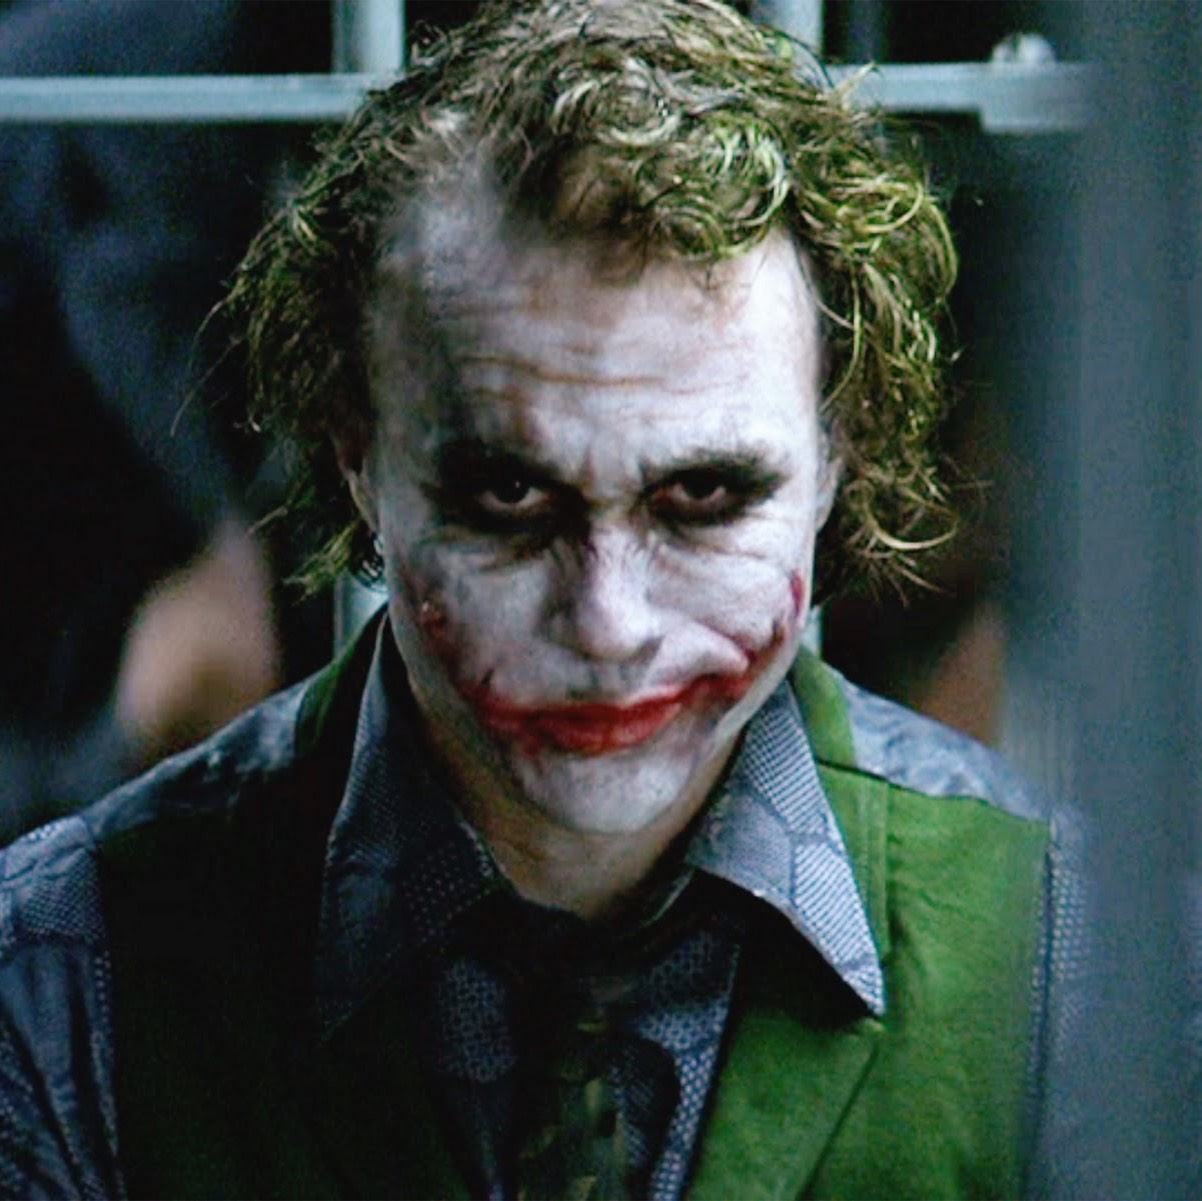 The Dark Knight - Is the Joker an Atheist?